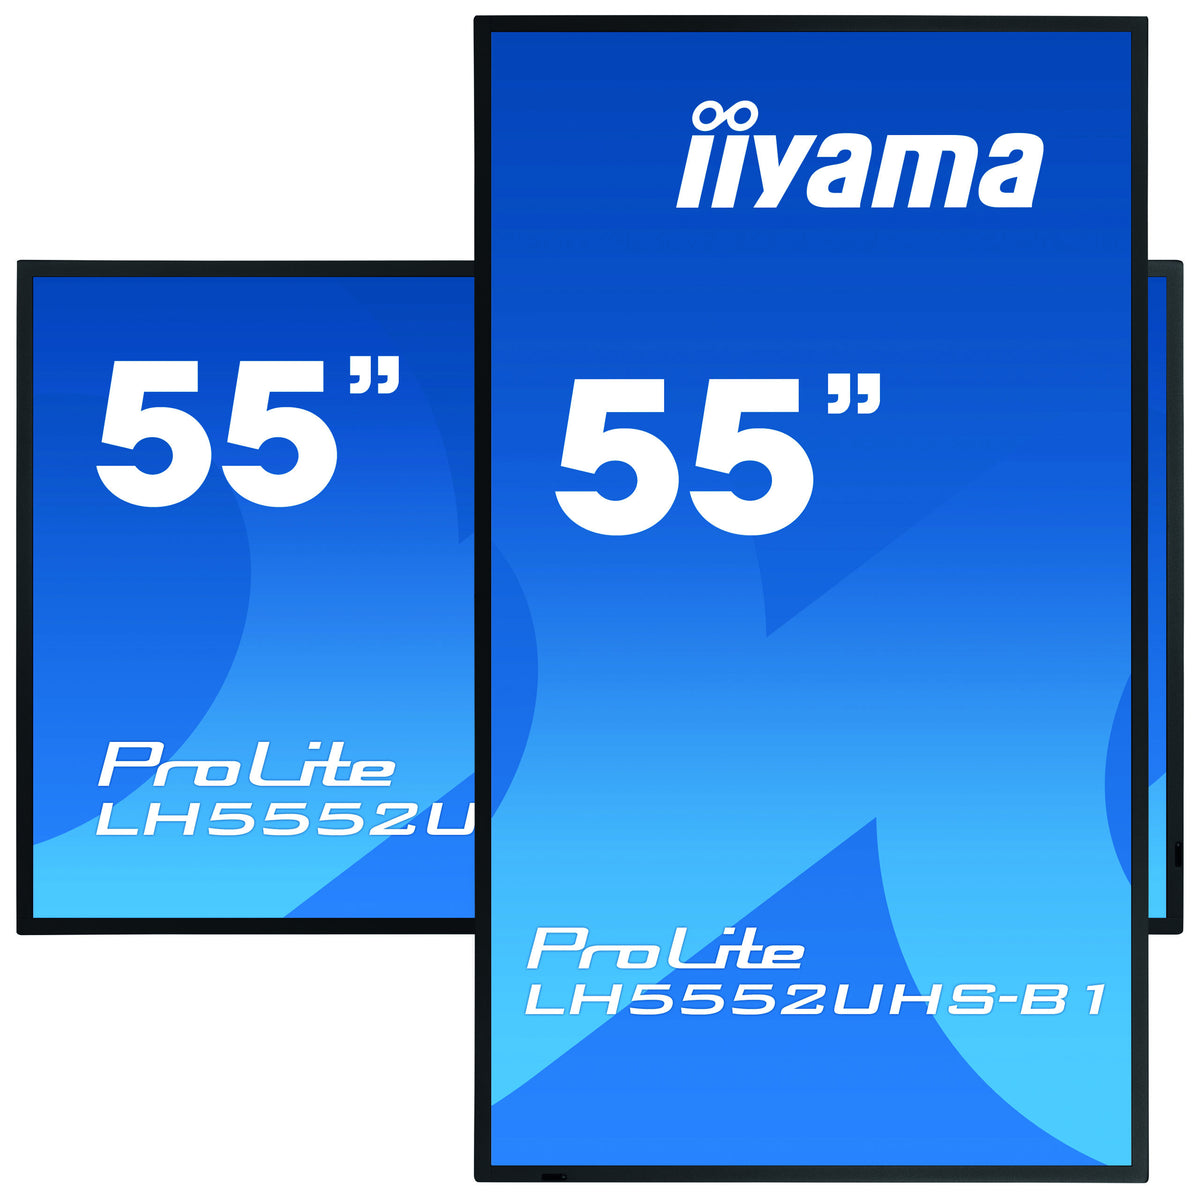 iiyama ProLite LH5552UHS-B1 - 55" Classe Diagonal (54.6" visível) ecrã LCD com luz de fundo LED - sinalização digital - Android - 4K UHD (2160p) 3840 x 2160 - preto opaco